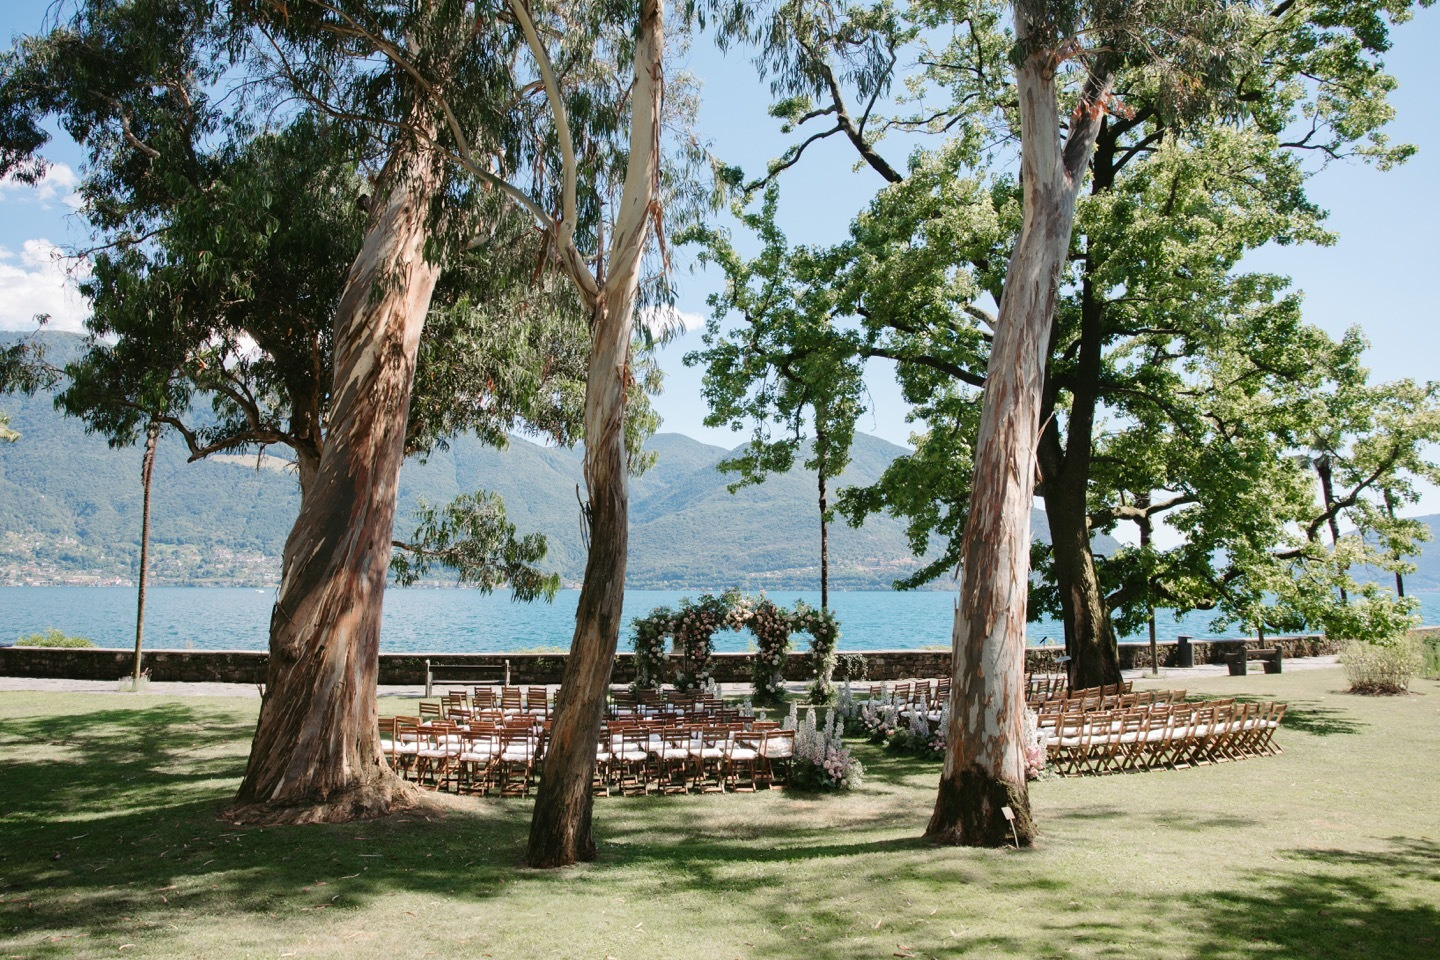 Ароматы ботанического сада: роскошная свадьба на частном острове